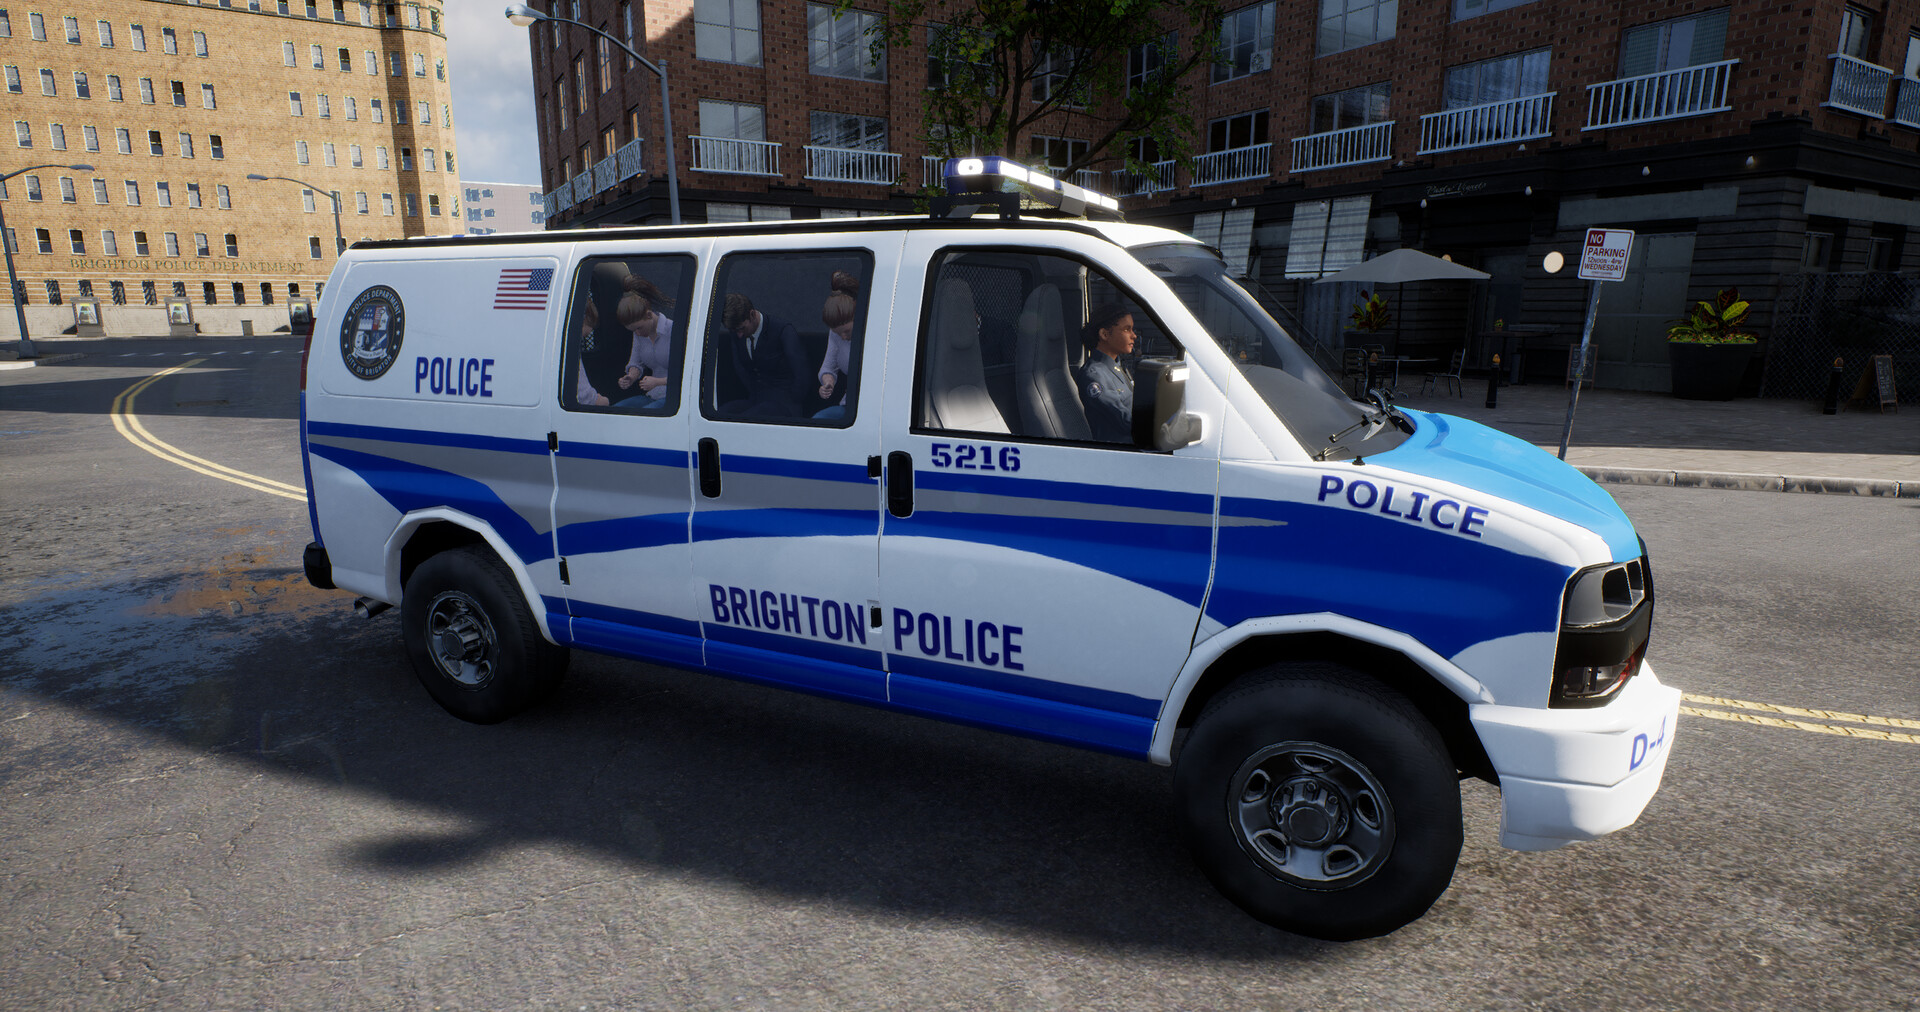 NOVO SIMULADOR DE POLÍCIA em MUNDO ABERTO!!! - Police Simulator Patrol Duty  